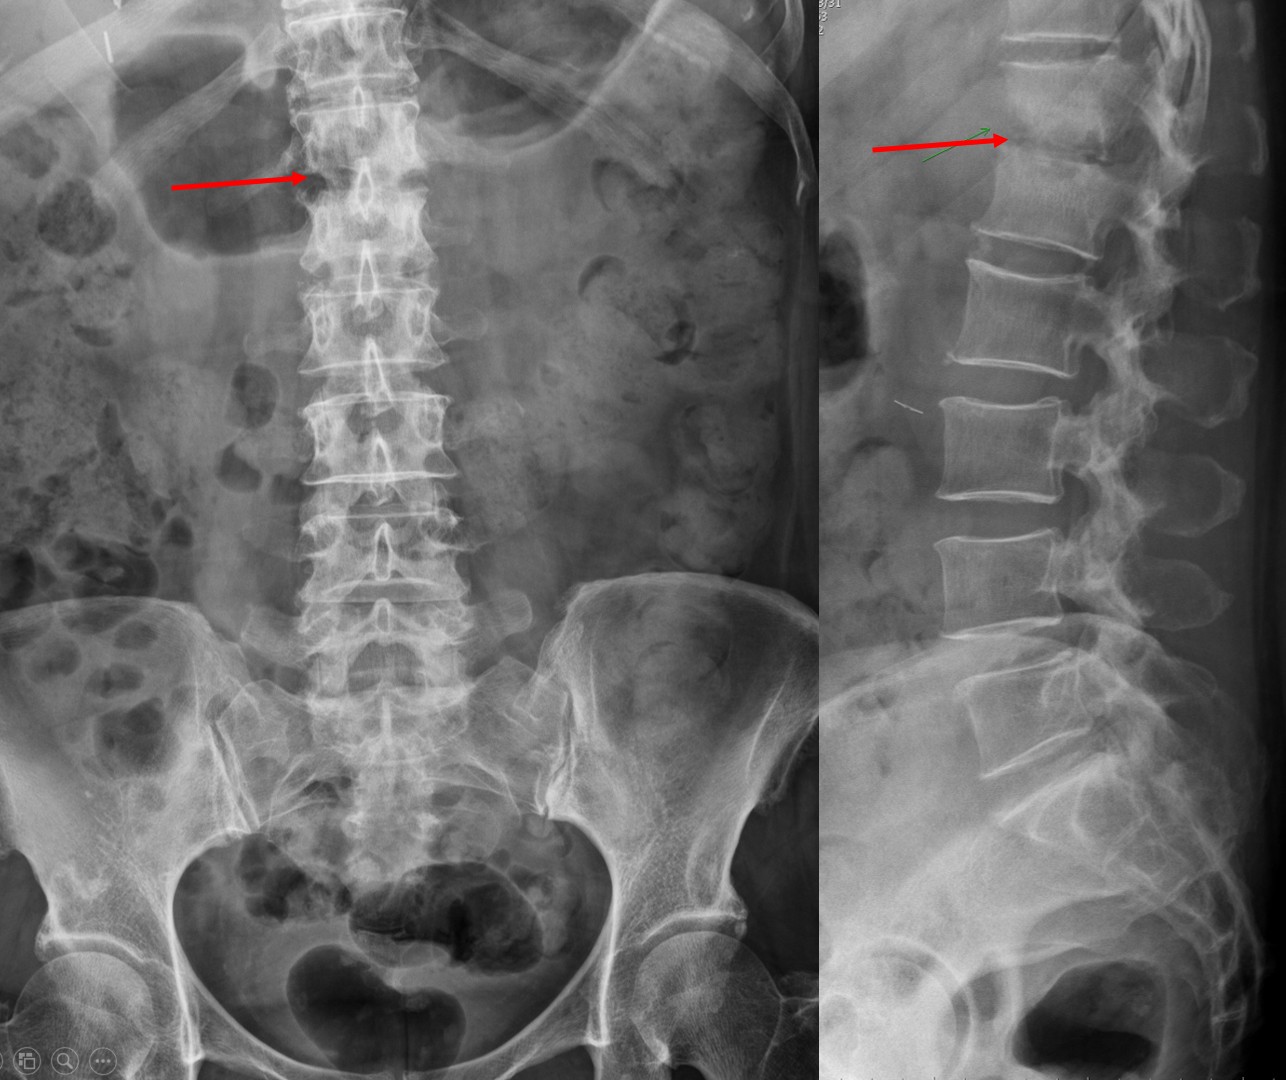 脊柱脊髓手术的定位 - 脑医汇 - 神外资讯 - 神介资讯